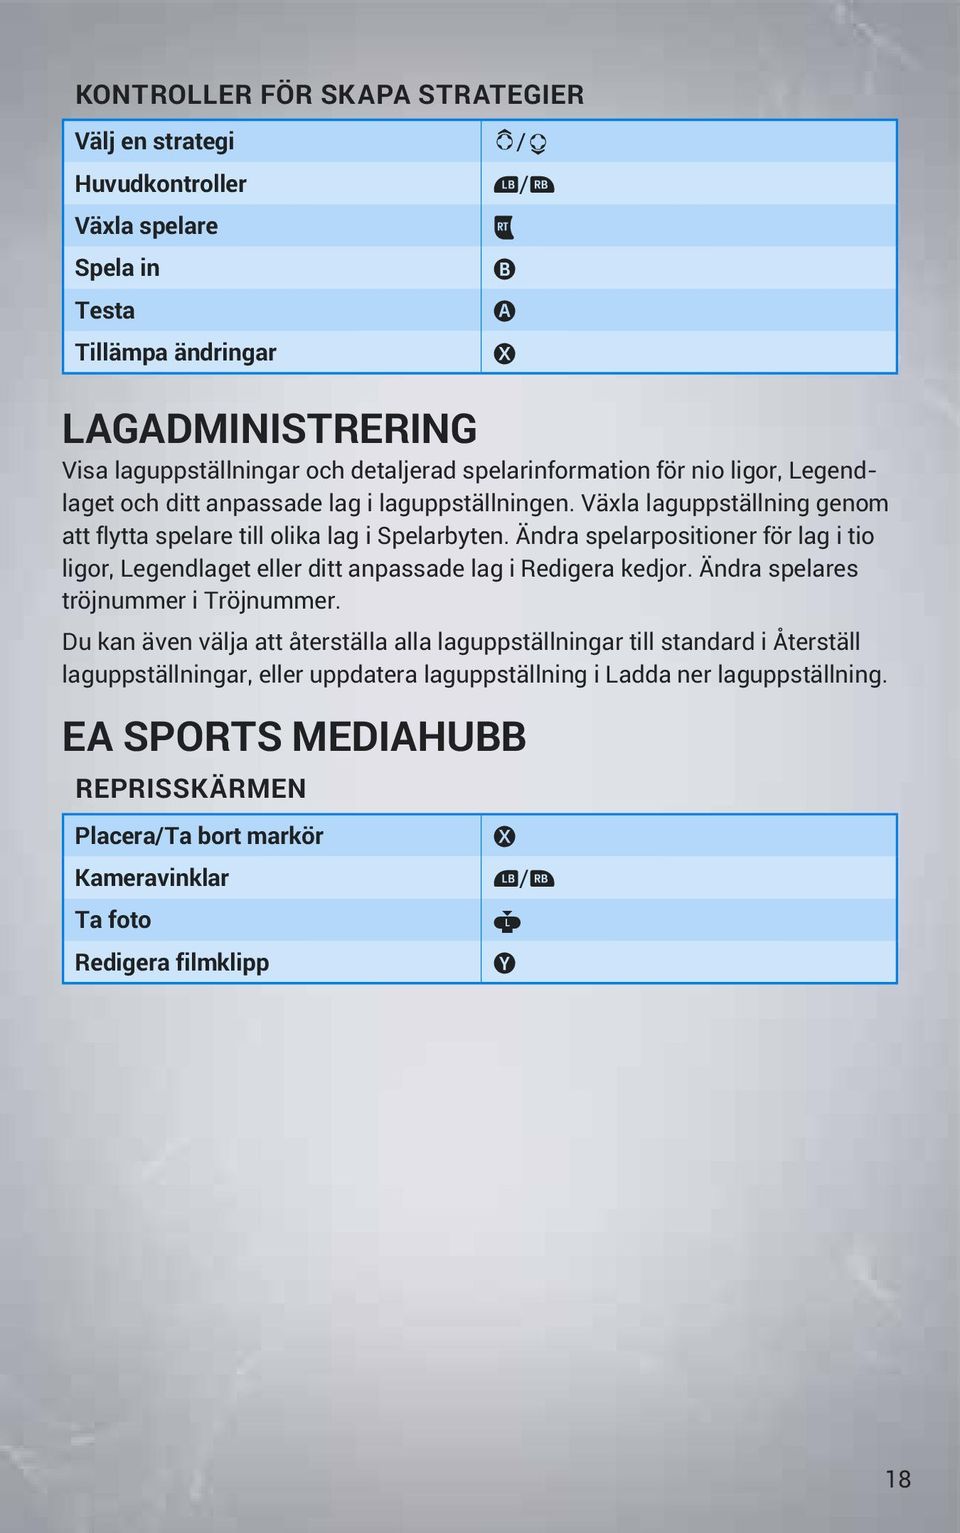 Ändra spelarpositioner för lag i tio ligor, Legendlaget eller ditt anpassade lag i Redigera kedjor. Ändra spelares tröjnummer i Tröjnummer.